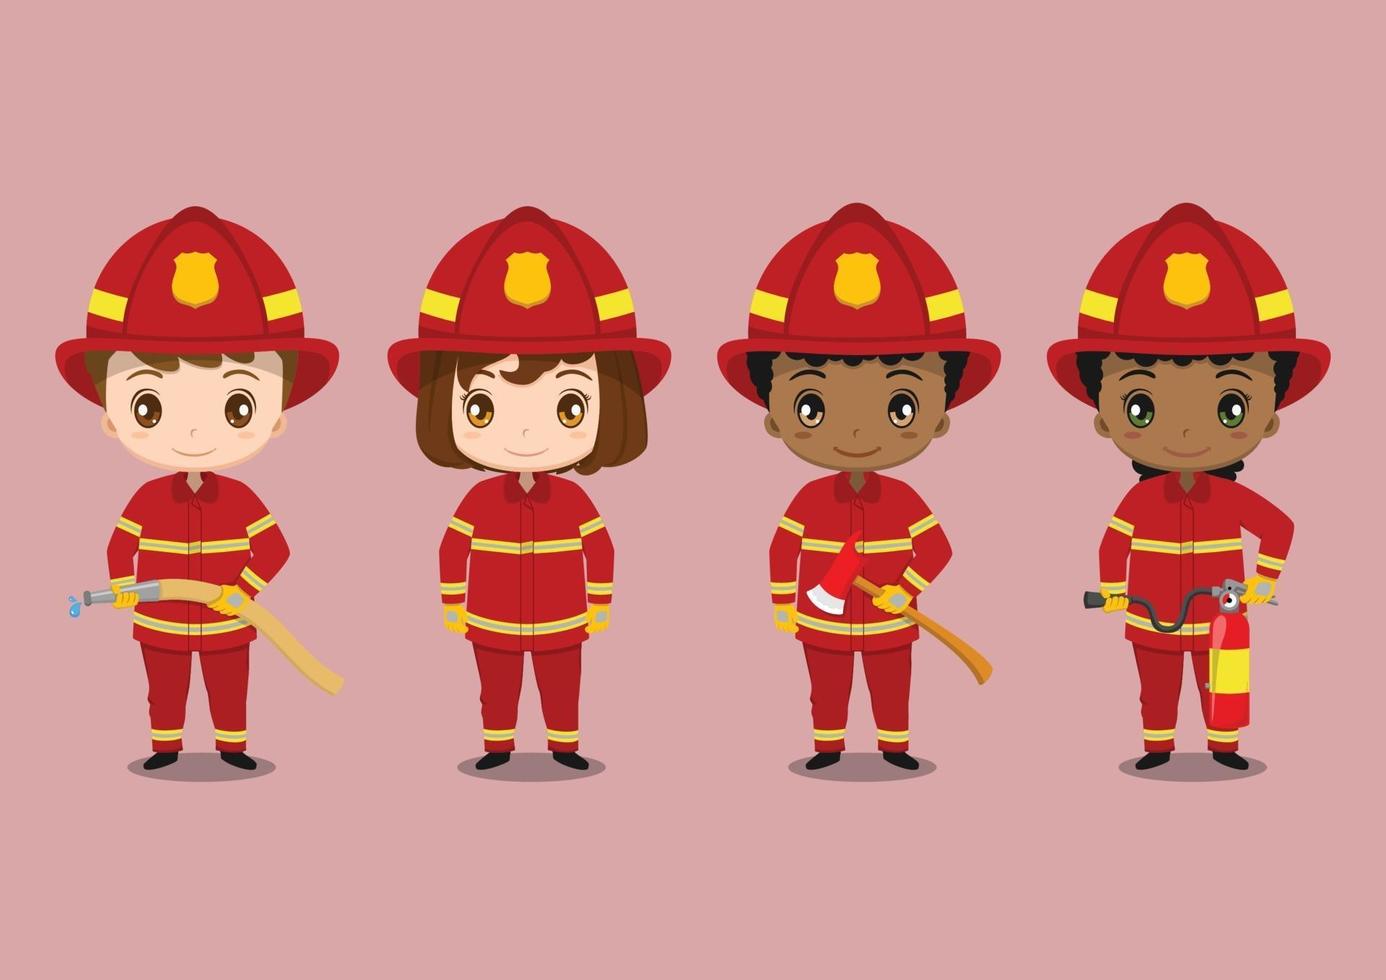 enfants mignons portant des uniformes de pompier vecteur